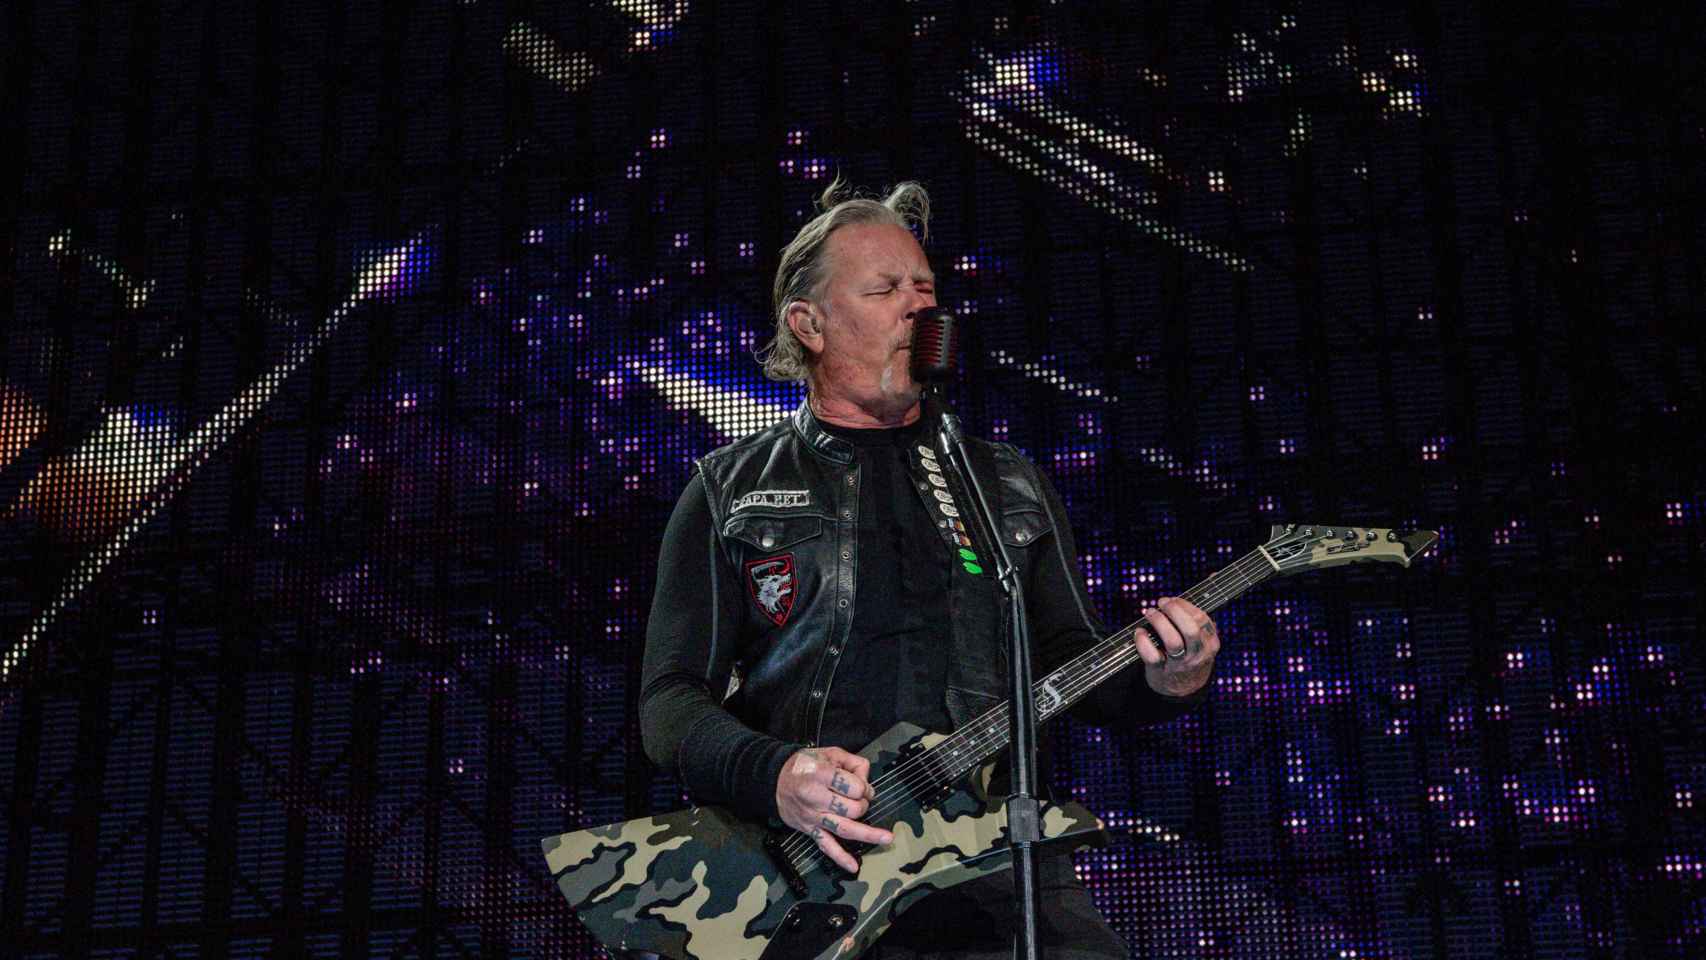 James Hetfield, vocalista de Metallica durante el concierto / EUROPAPRESS